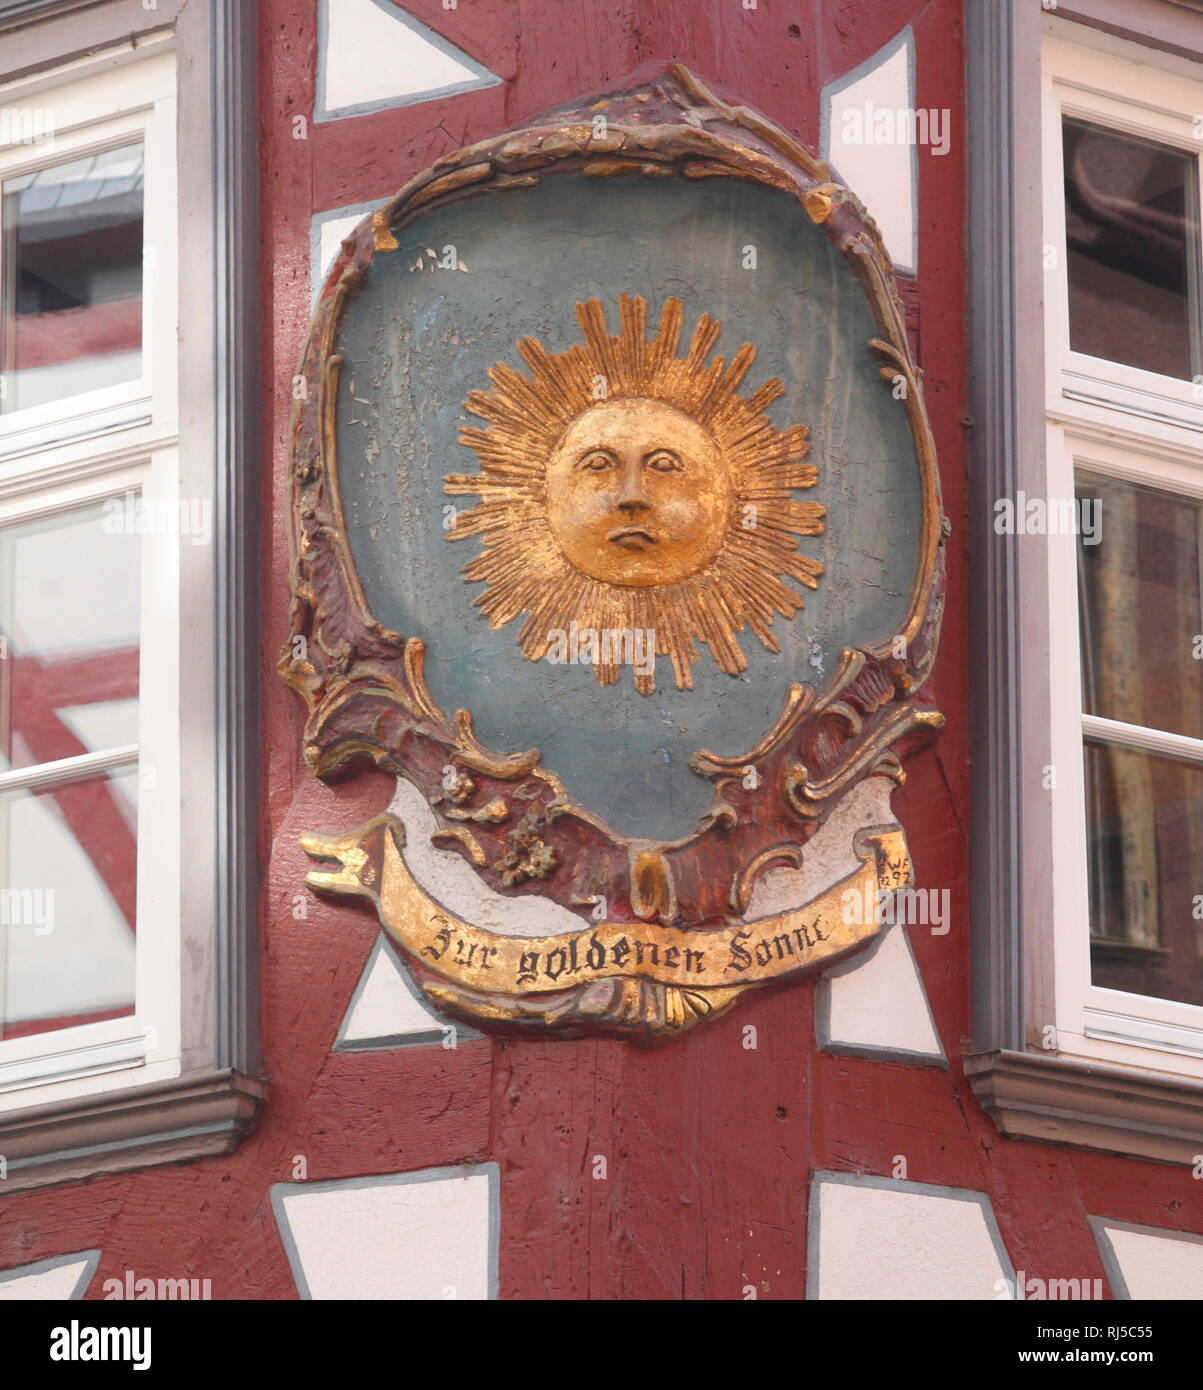 Verzierung, dettaglio, Historisches Fachwerkhaus Zur Goldenen Sonne, Wetzlarer Altstadt , Wetzlar,Hessen, Deutschland, Europa Foto Stock